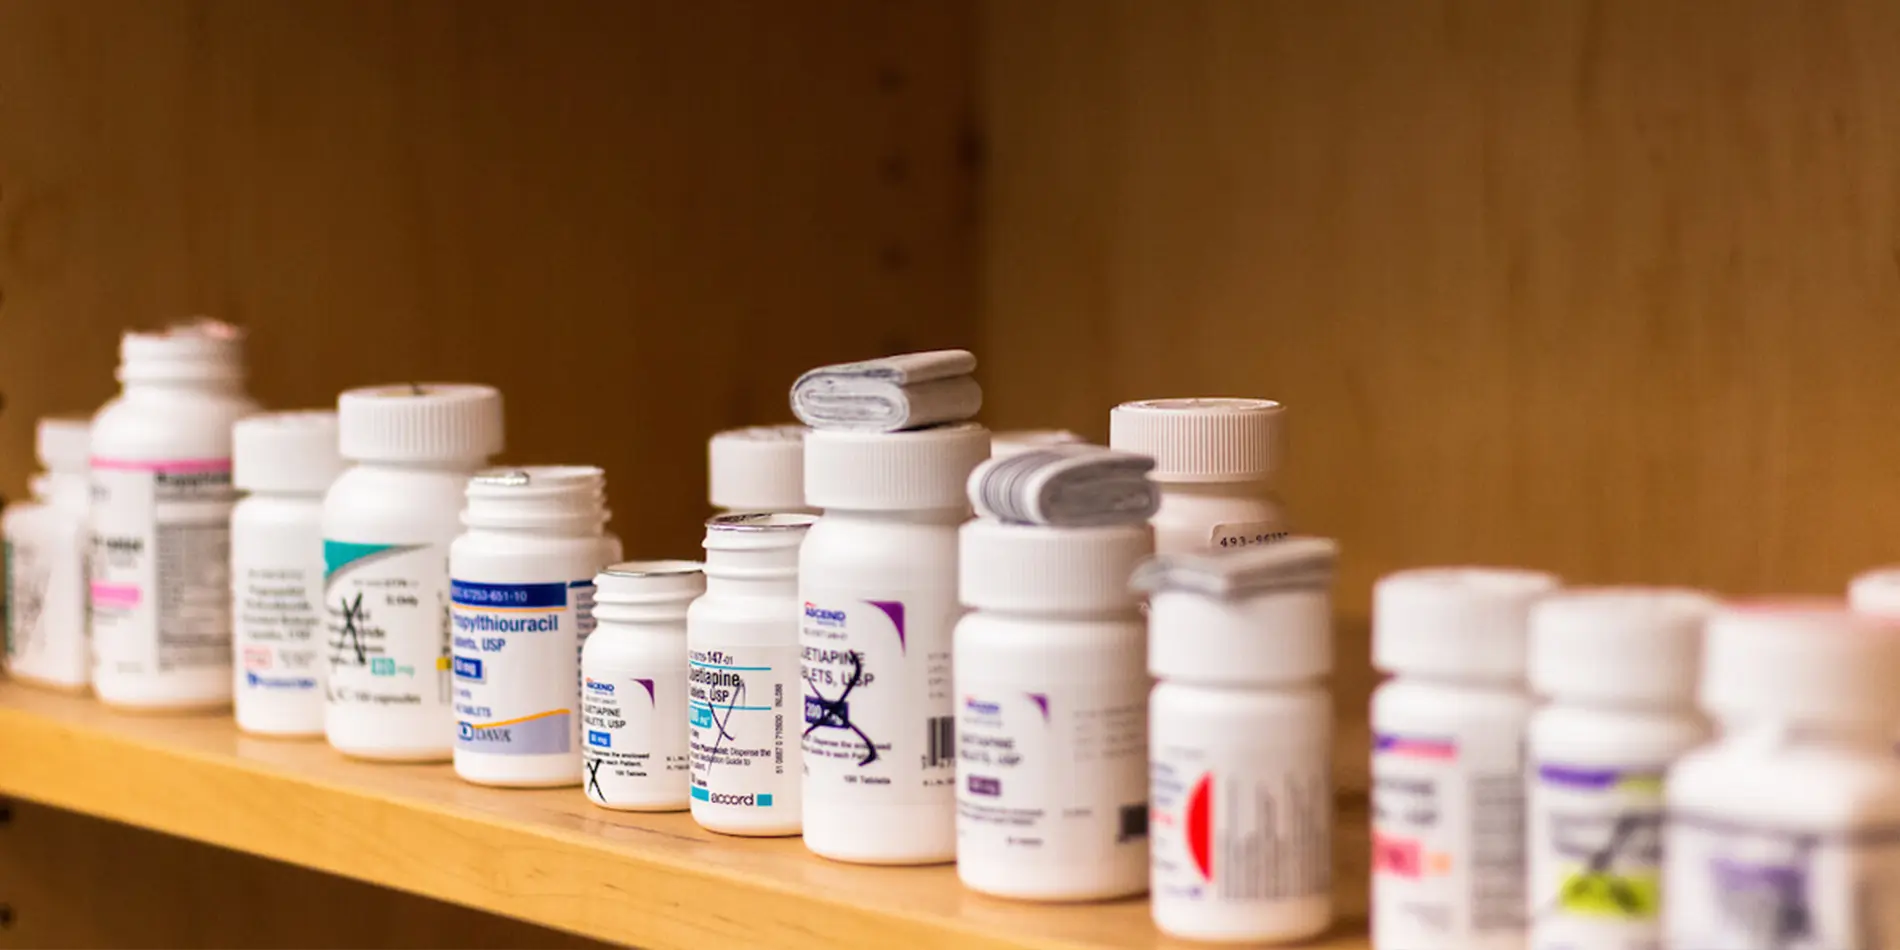 Close up of pill bottles on a wooden shelf.